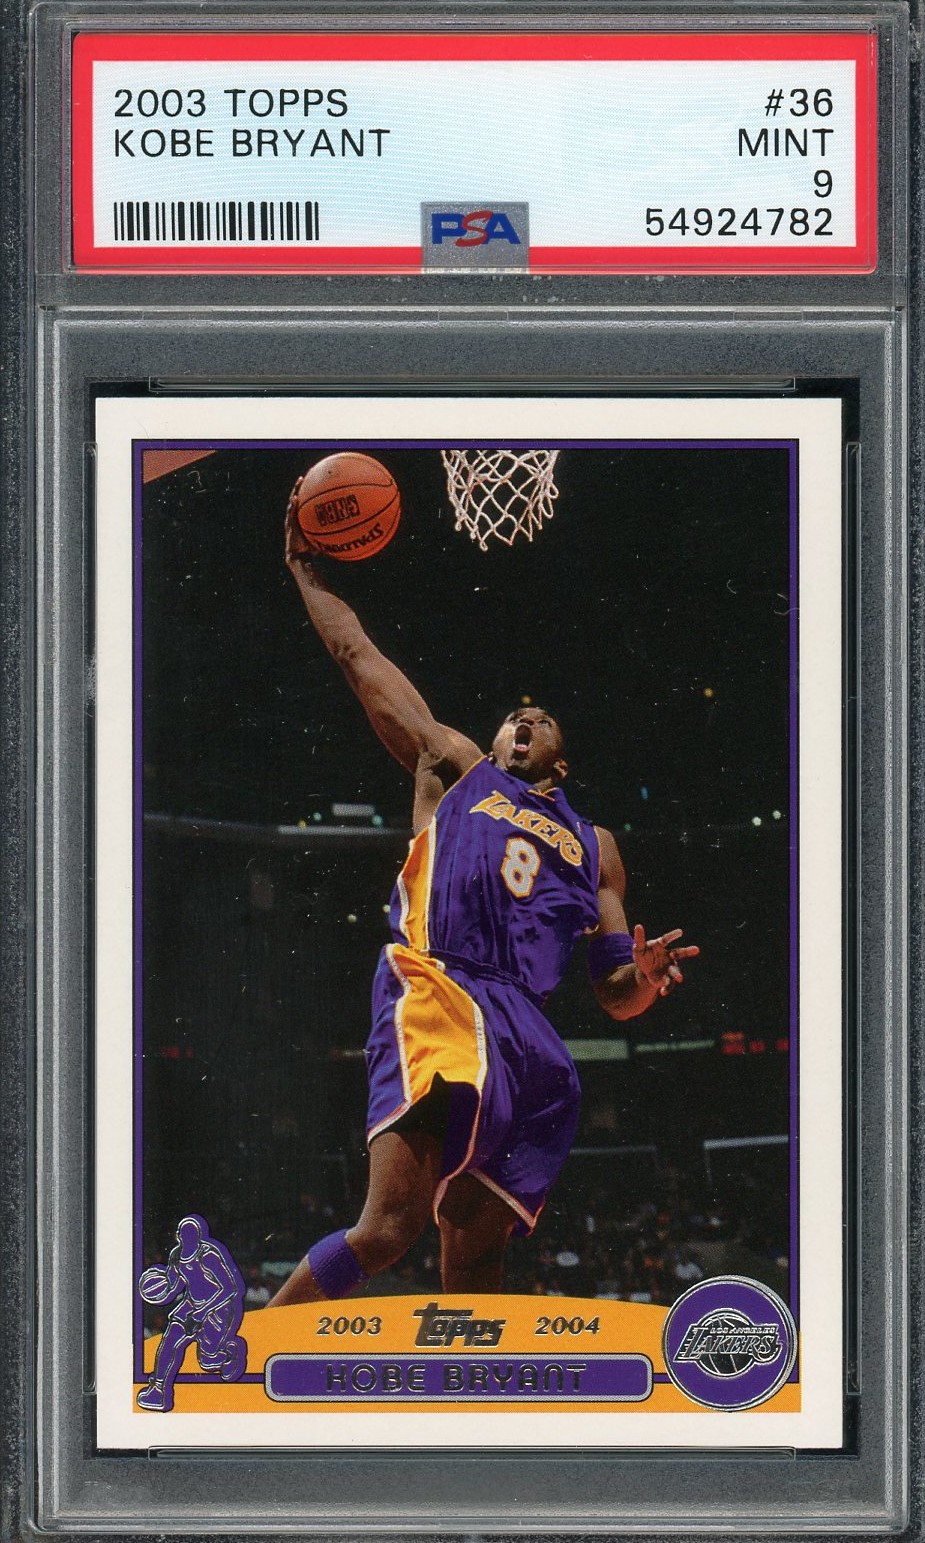 Kobe Bryant 2003 Topps Basketball Card #36 Graded PSA 9